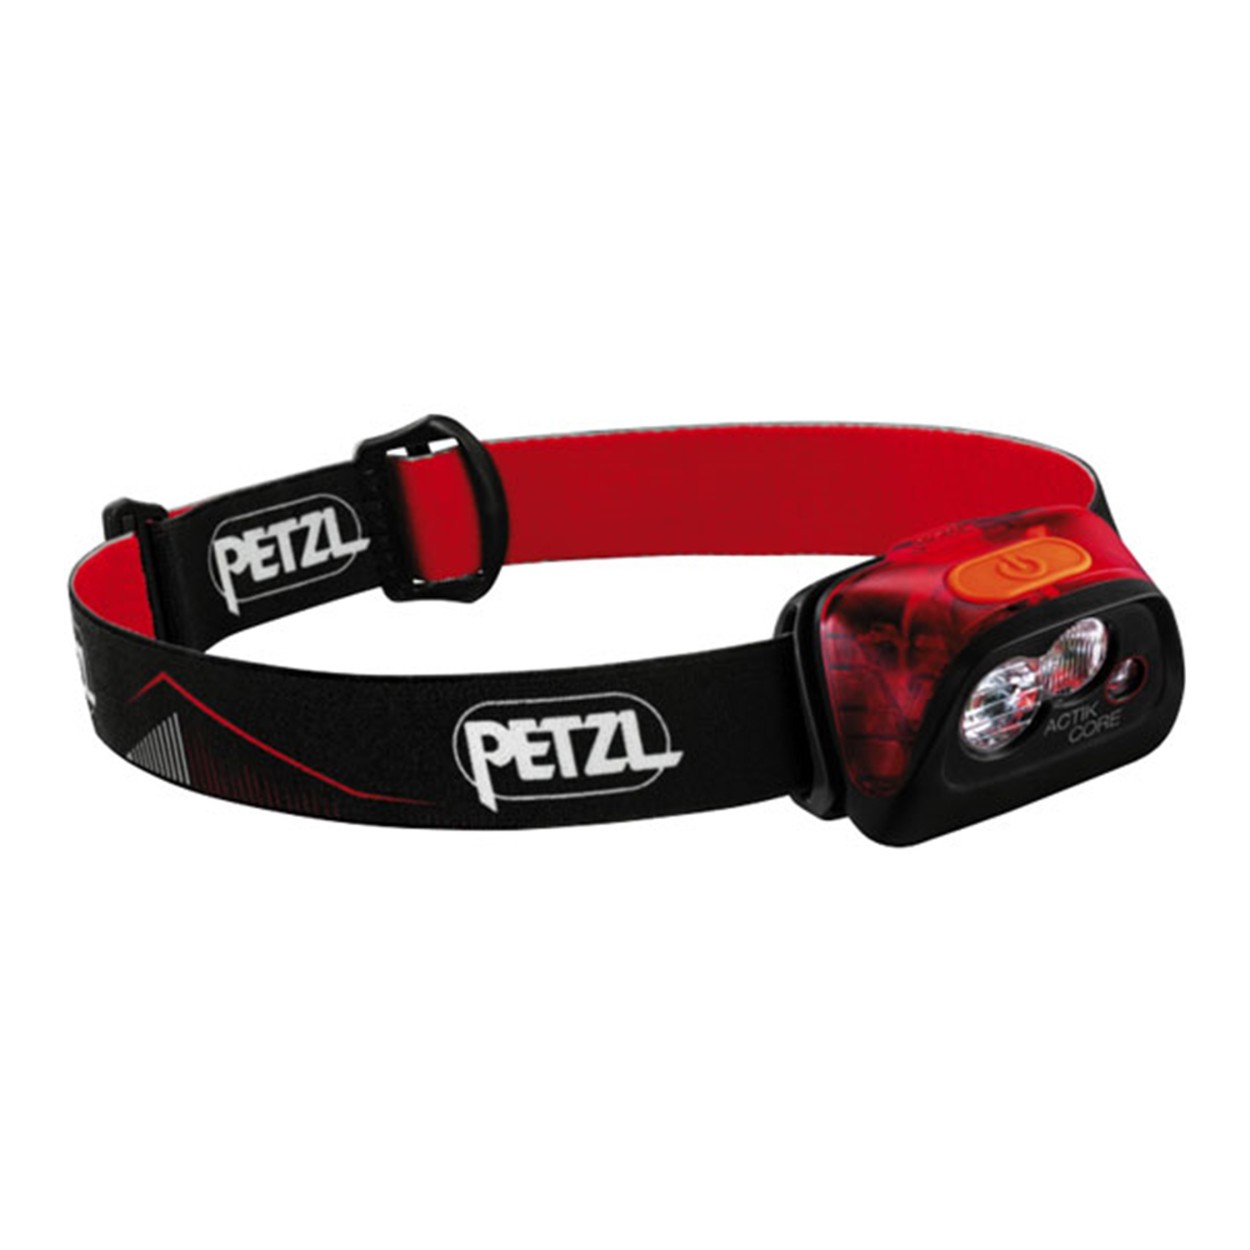 PETZL ペツル Actik Core アクティックコア ヘッドライト E099GA00 450ルーメン ブラック レッド アウトドア 登山  ランニング 釣り スポーツ